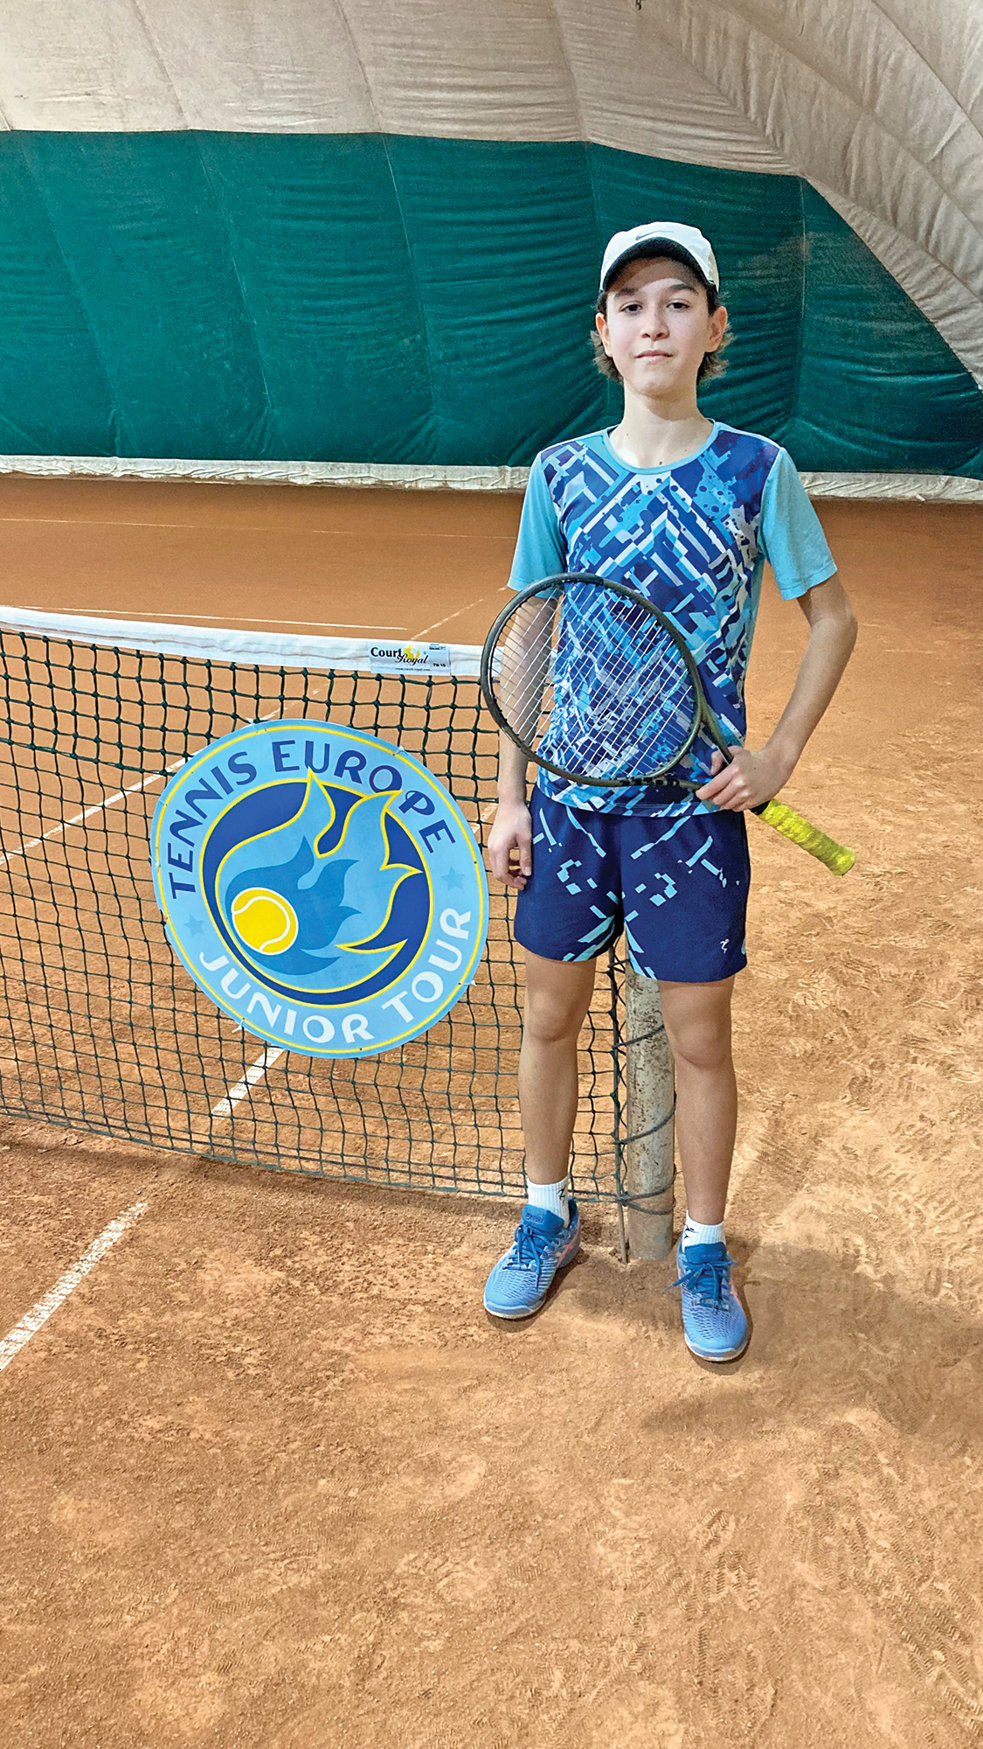 #superstories. Business sportiv. Pariul ZF pe viitorii campioni. Rareş Ionescu, tenis, 13 ani: Sportul mă ajută chiar şi la şcoală. Tratez cu mai multă uşurinţă testările şi fac mai bine faţă condiţiilor de stres